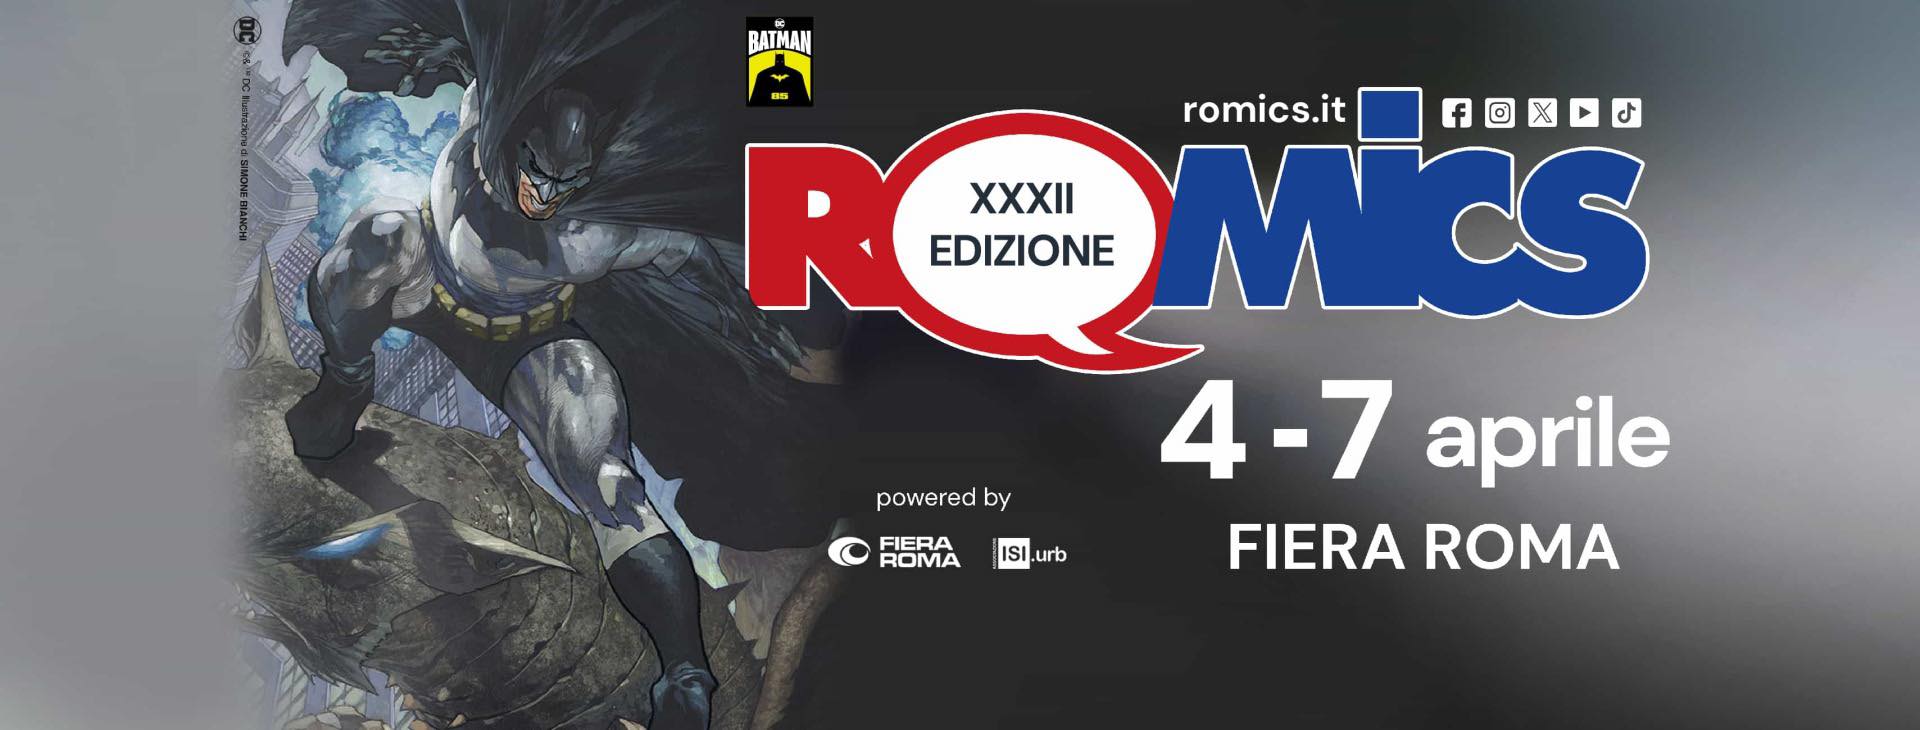 Romics XXXII: dal 4 al 7 aprile in Fiera Roma si celebra la nuova edizione